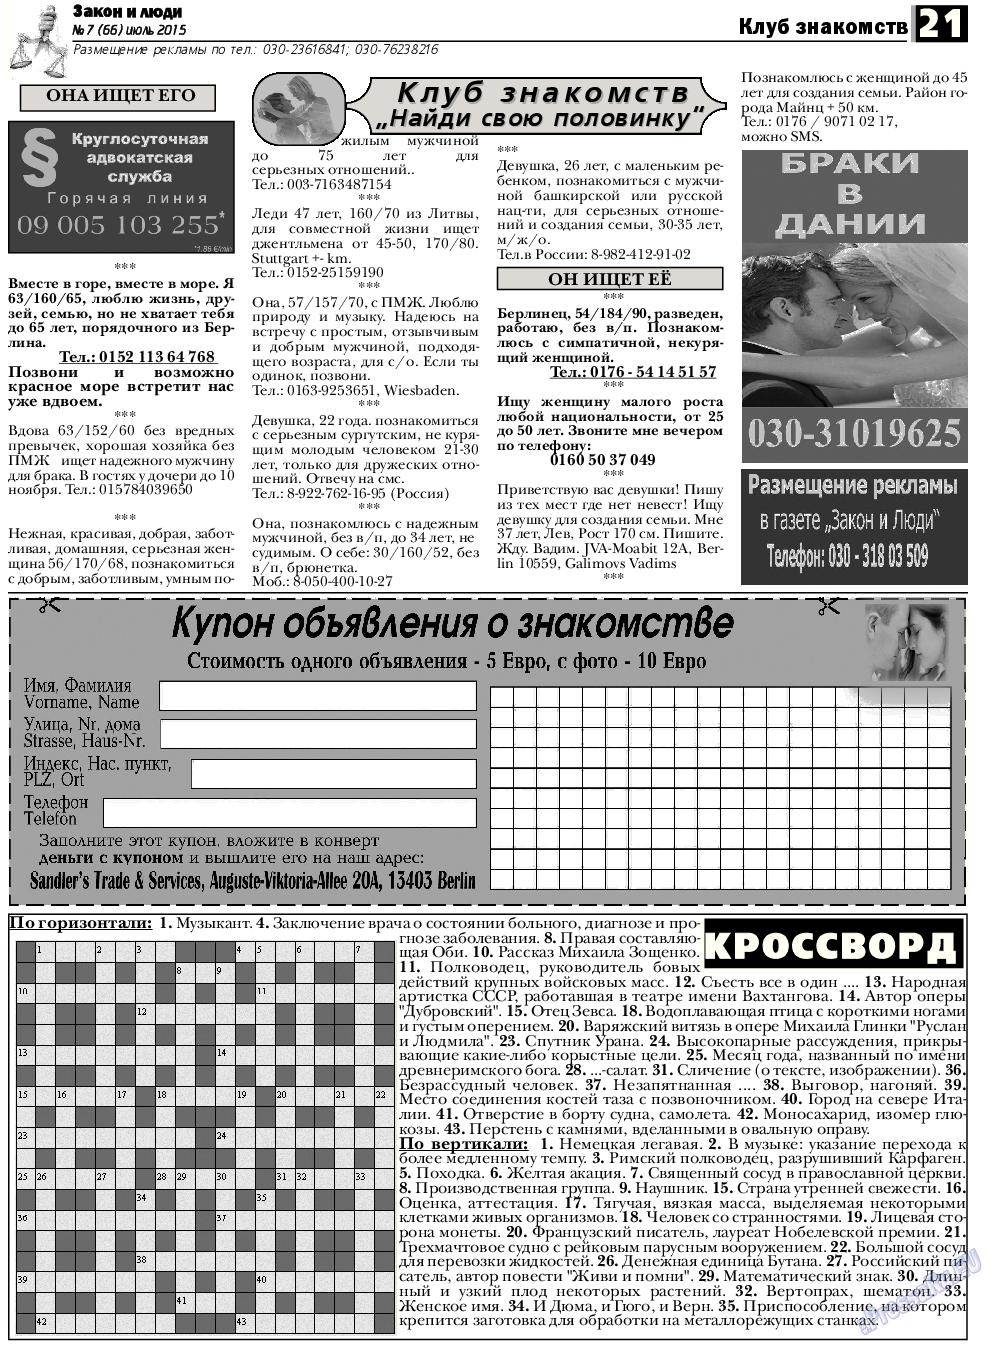 Закон и люди, газета. 2015 №7 стр.21